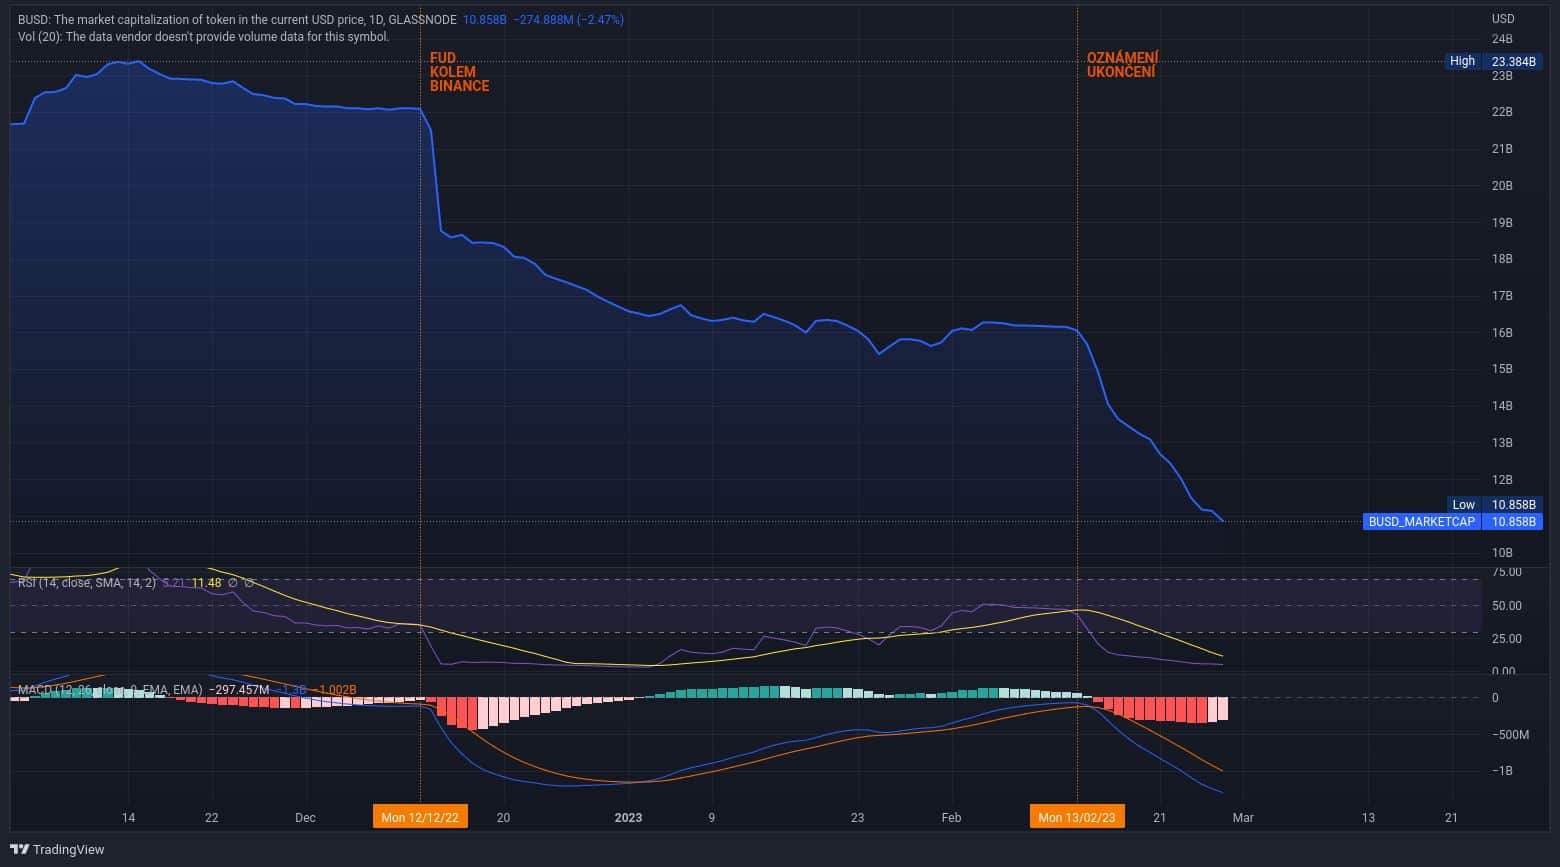 Tržní kapitalizace BUSD již jen klesá. První pokles nastal v prosinci, kdy probíhal FUD kolem Binance. Coinbase jej aktuálně vyřadila z nabídky (zdroj: TradingView.com).